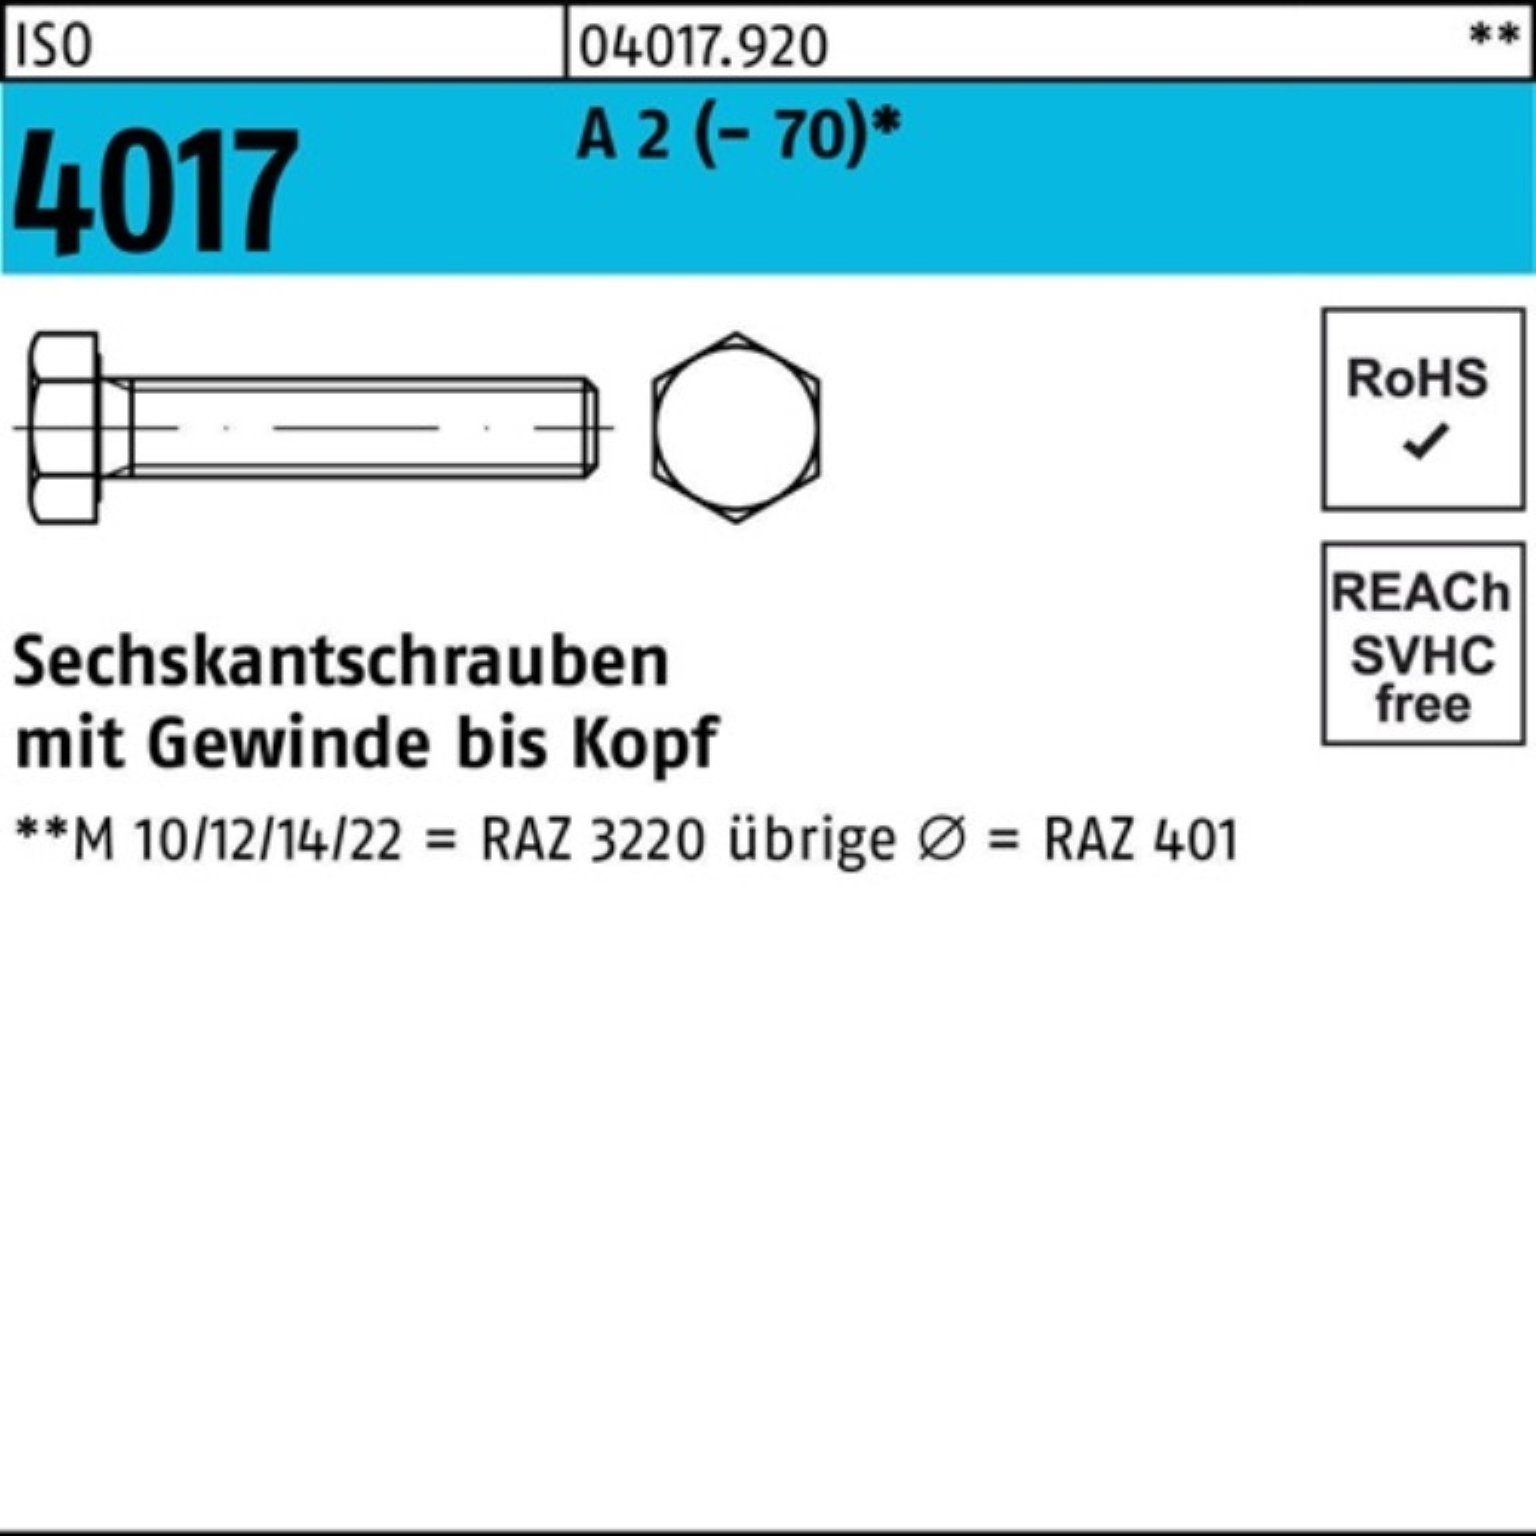 Bufab Sechskantschraube 100er Pack 100 Sechskantschraube VG 4017 Stück A 2 60 ISO (70) M8x